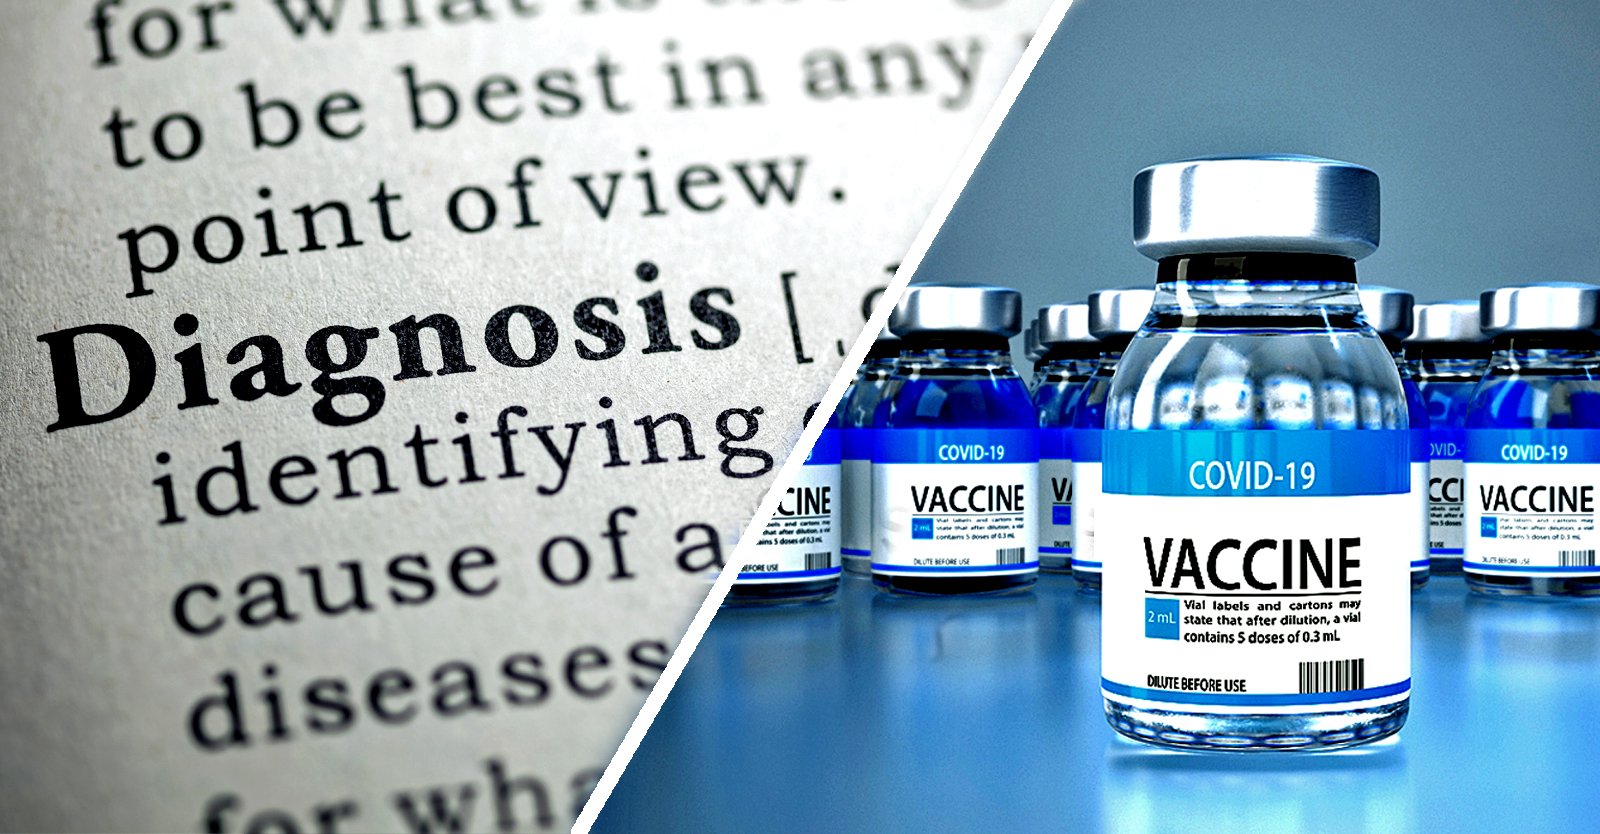 Volgens het onderzoek van Zogby werd bij 15% van de Amerikaanse volwassenen een nieuwe ziekte vastgesteld na het COVID-vaccin